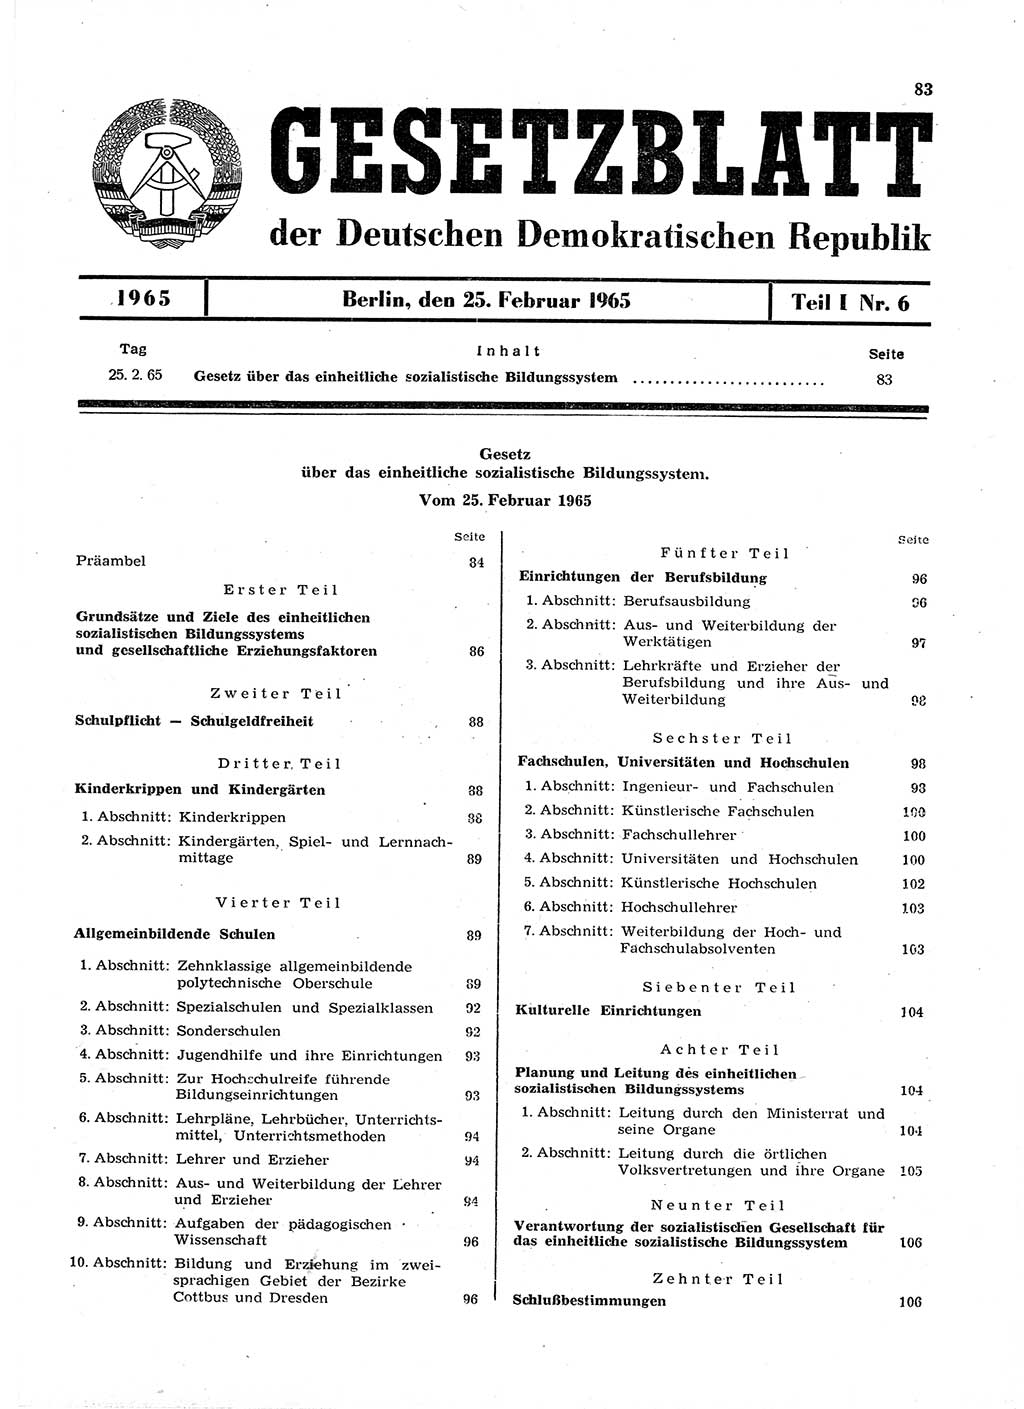 Gesetzblatt (GBl.) der Deutschen Demokratischen Republik (DDR) Teil Ⅰ 1965, Seite 83 (GBl. DDR Ⅰ 1965, S. 83)